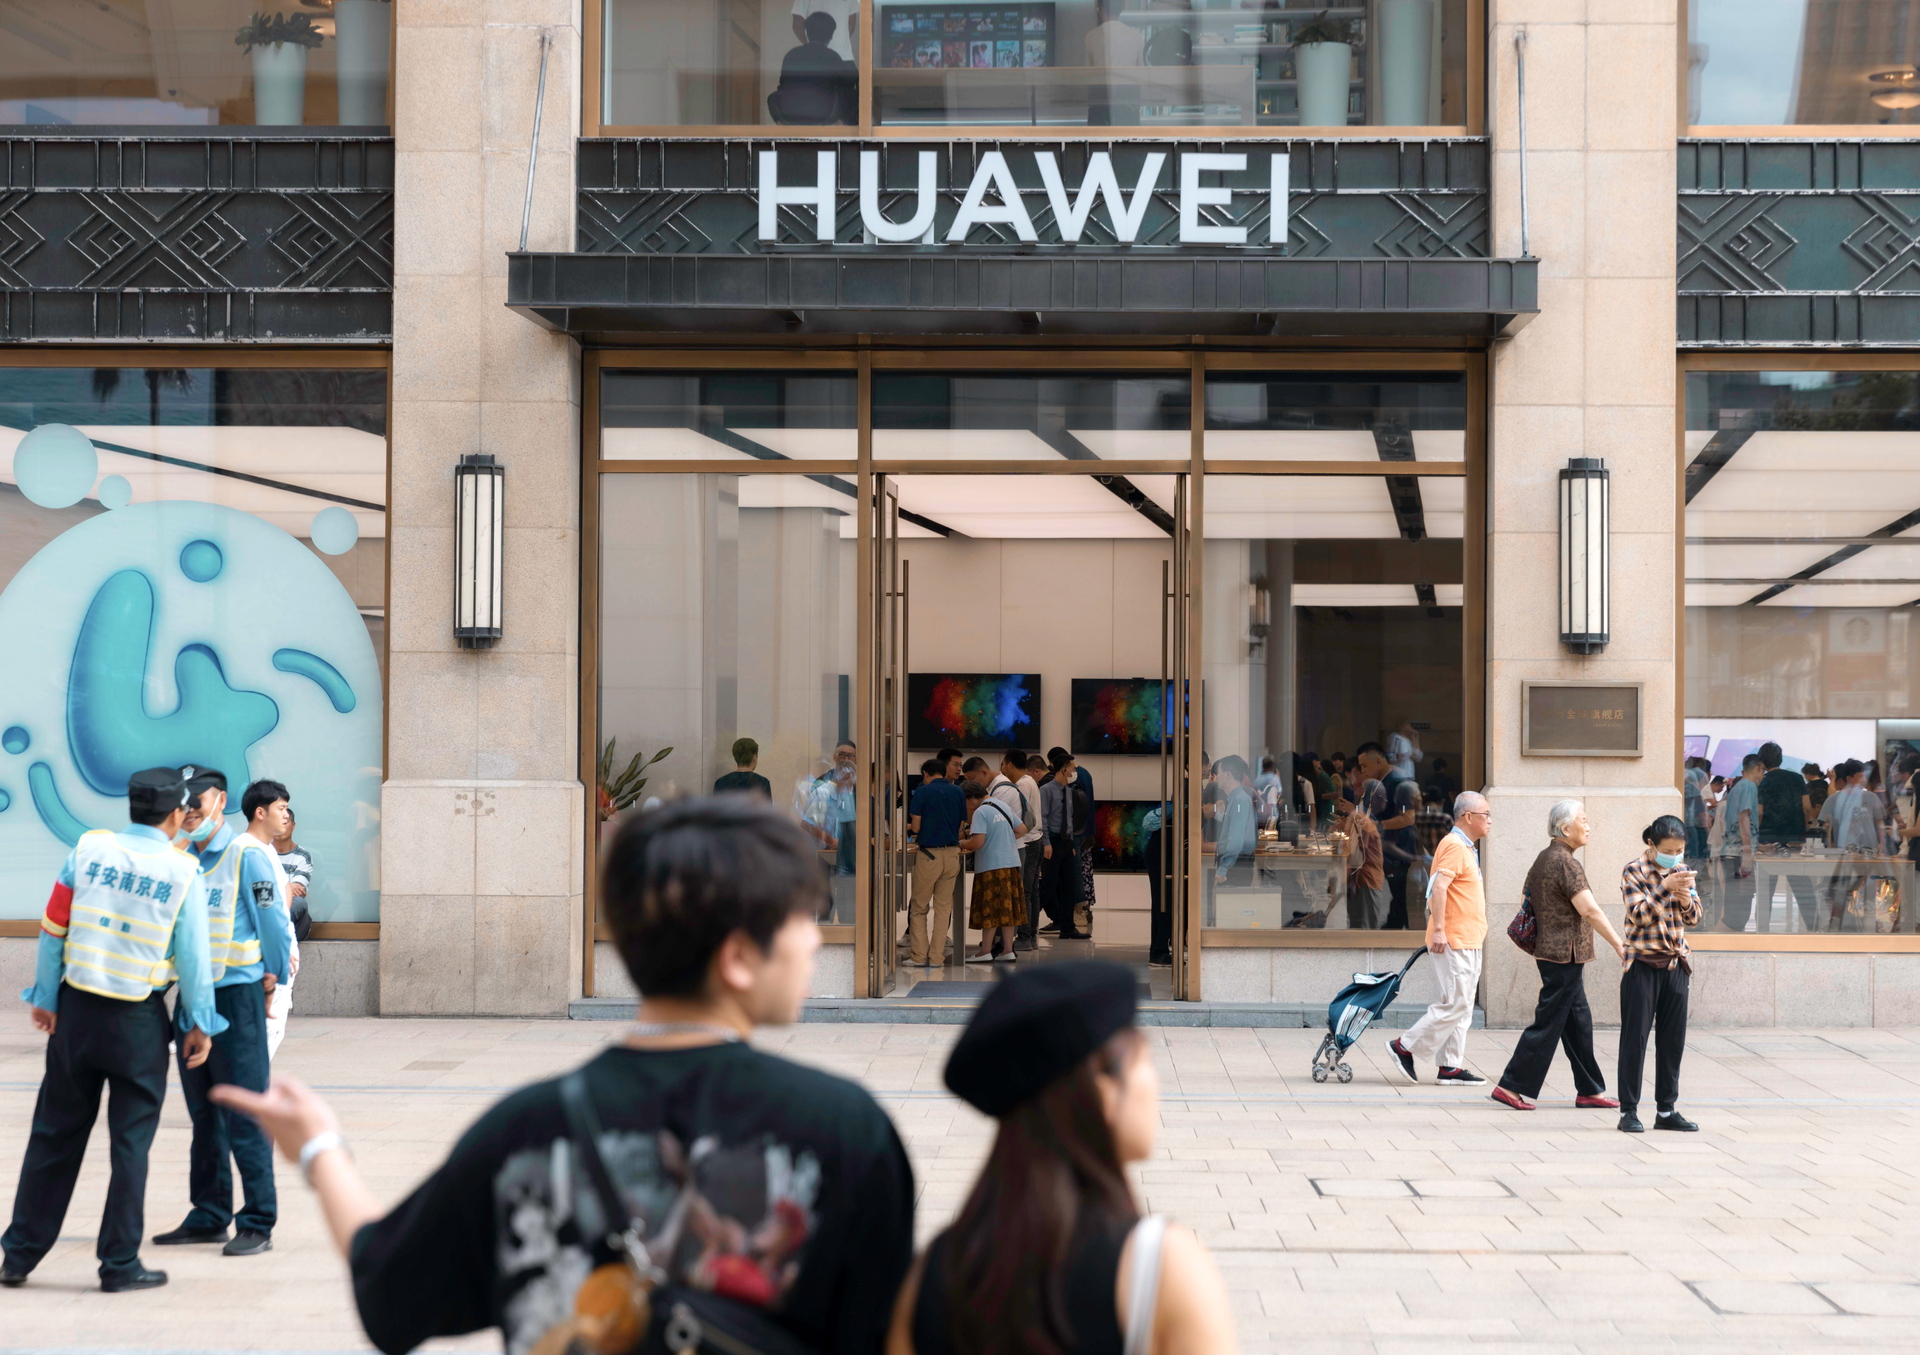 Huawei vai a tribunal para contestar a sua exclusão da rede 5G de Portugal